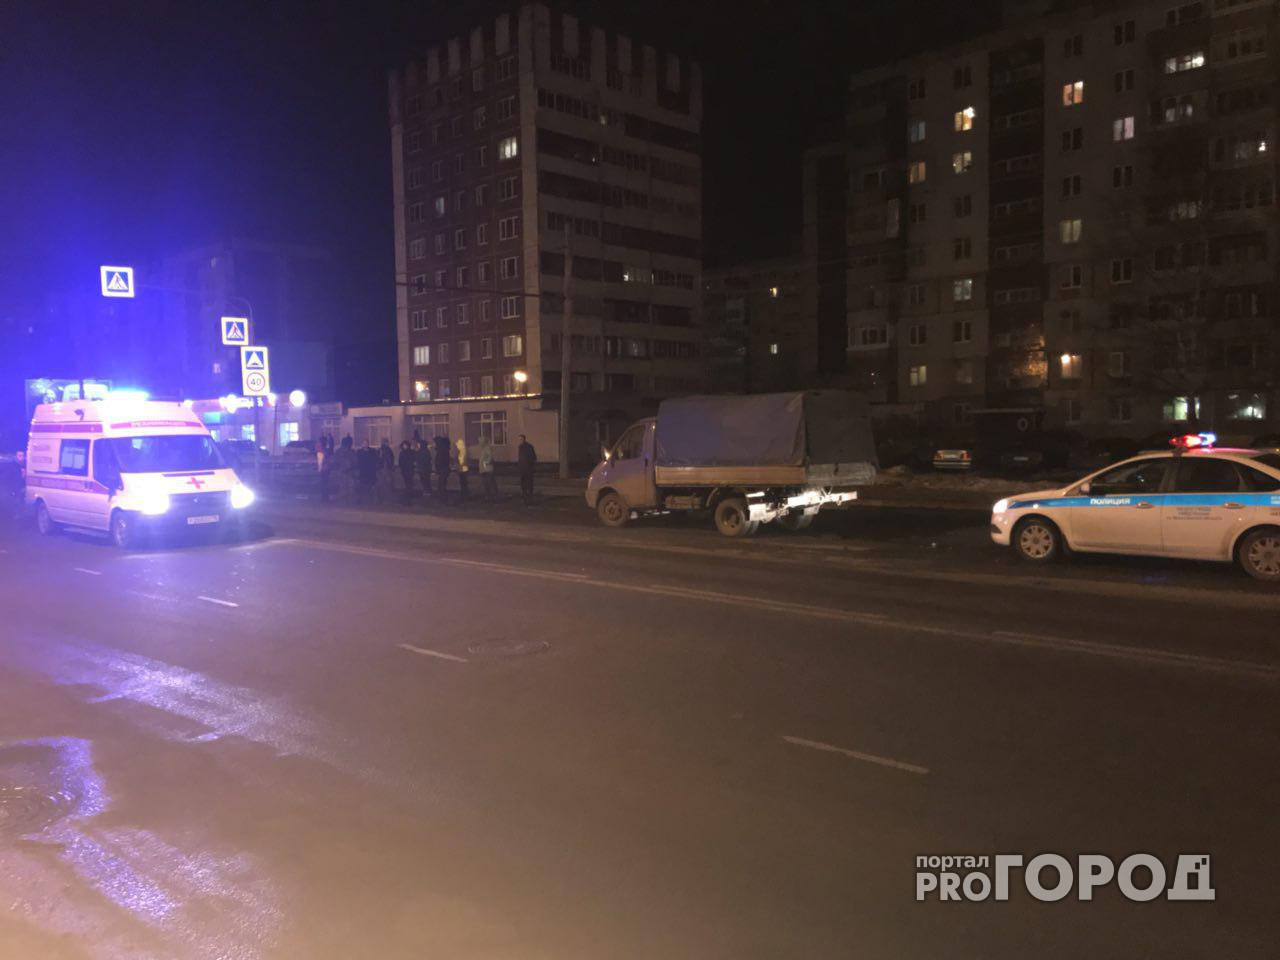 В Ярославле ищут водителя-убийцу: кадры с места